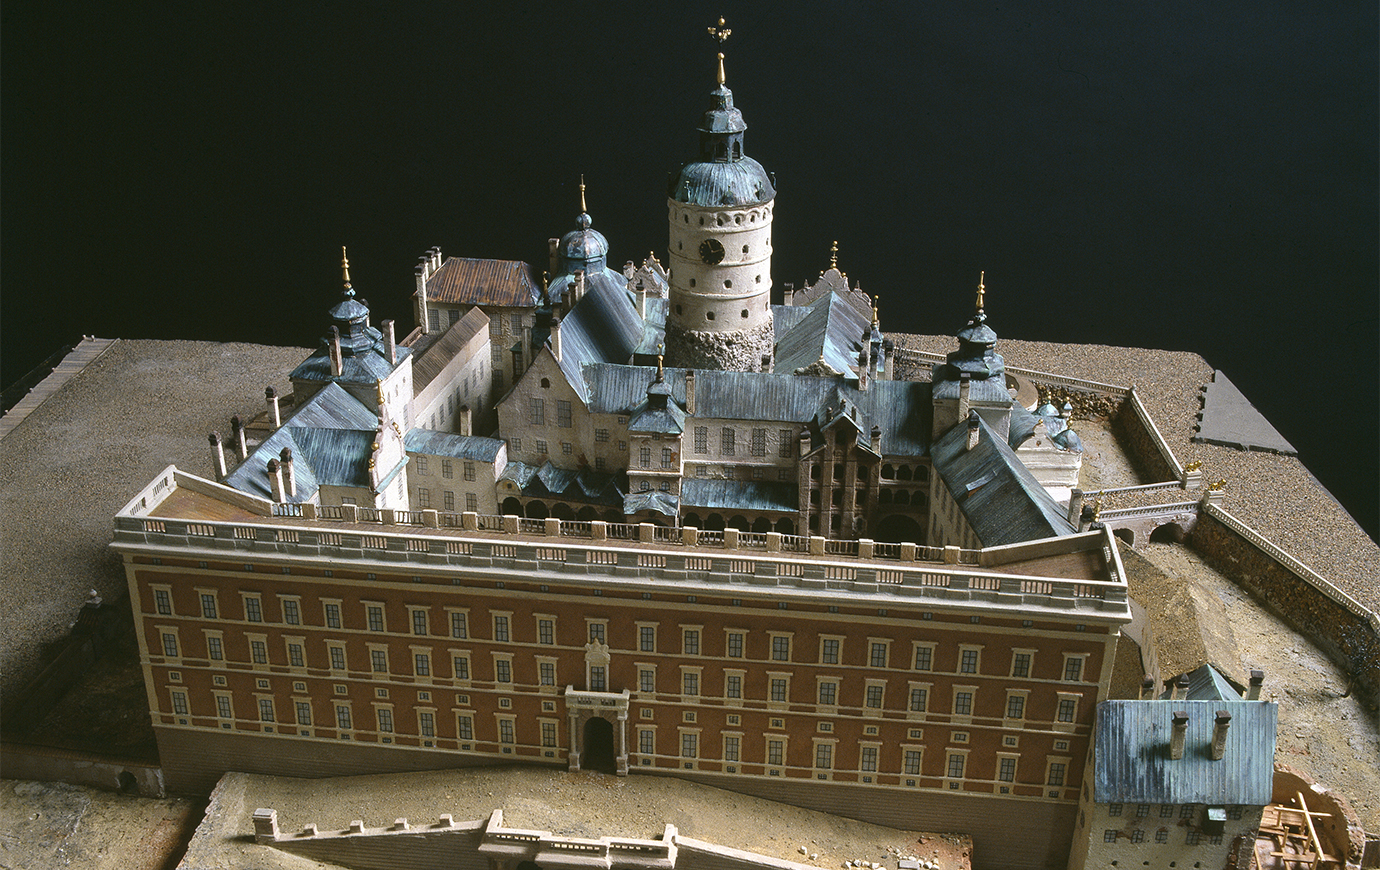 Modell av Slottet Tre Kronor så som det såg ut just innan branden 1697. Här från norr.